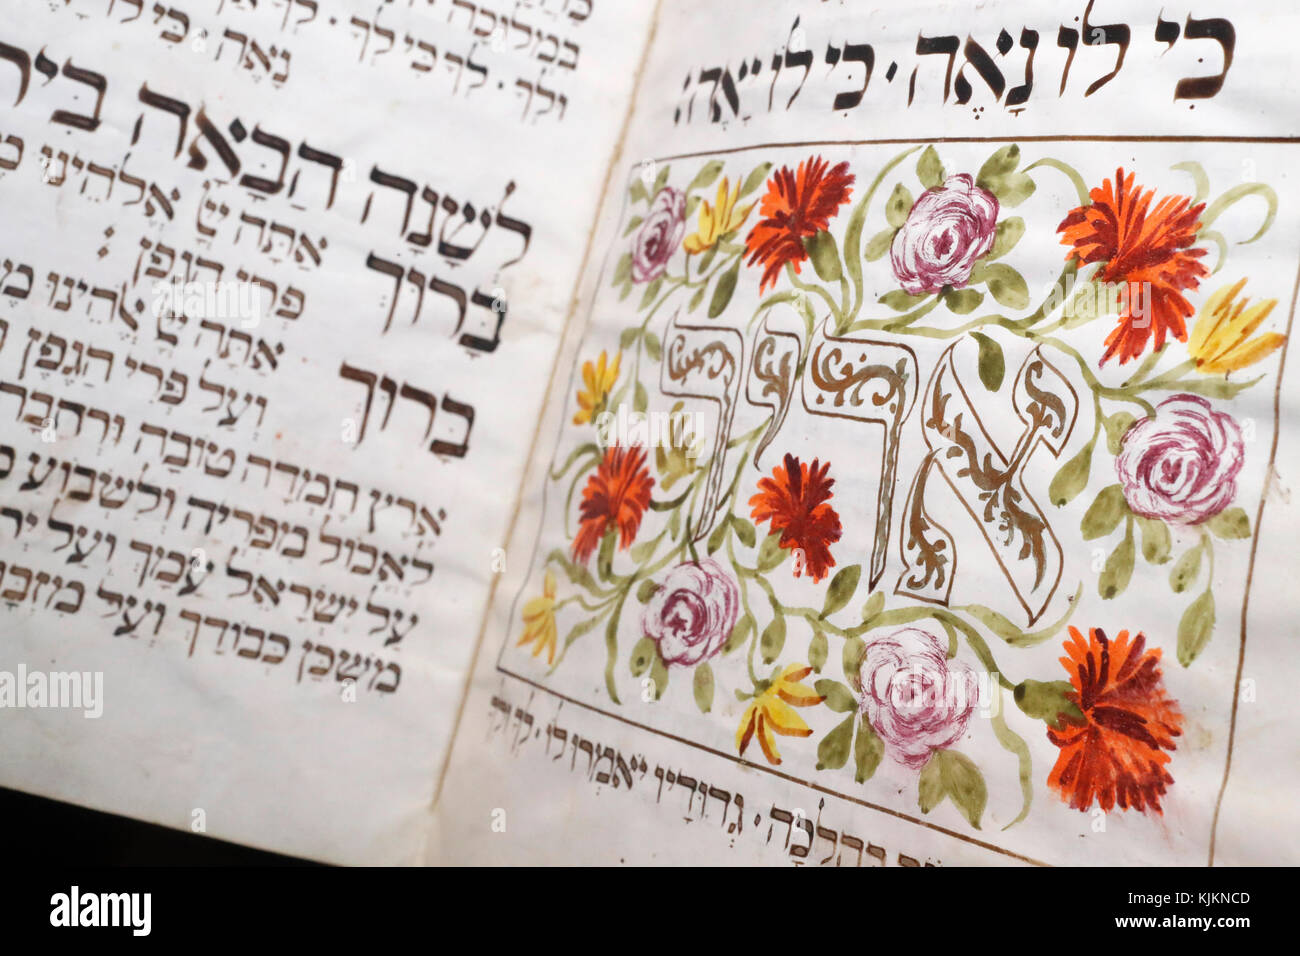 Vieille Haggadah illuminé (Presbourg 1773). Un texte juif qui établit l'ordre du Seder pascal. La Suisse. Banque D'Images